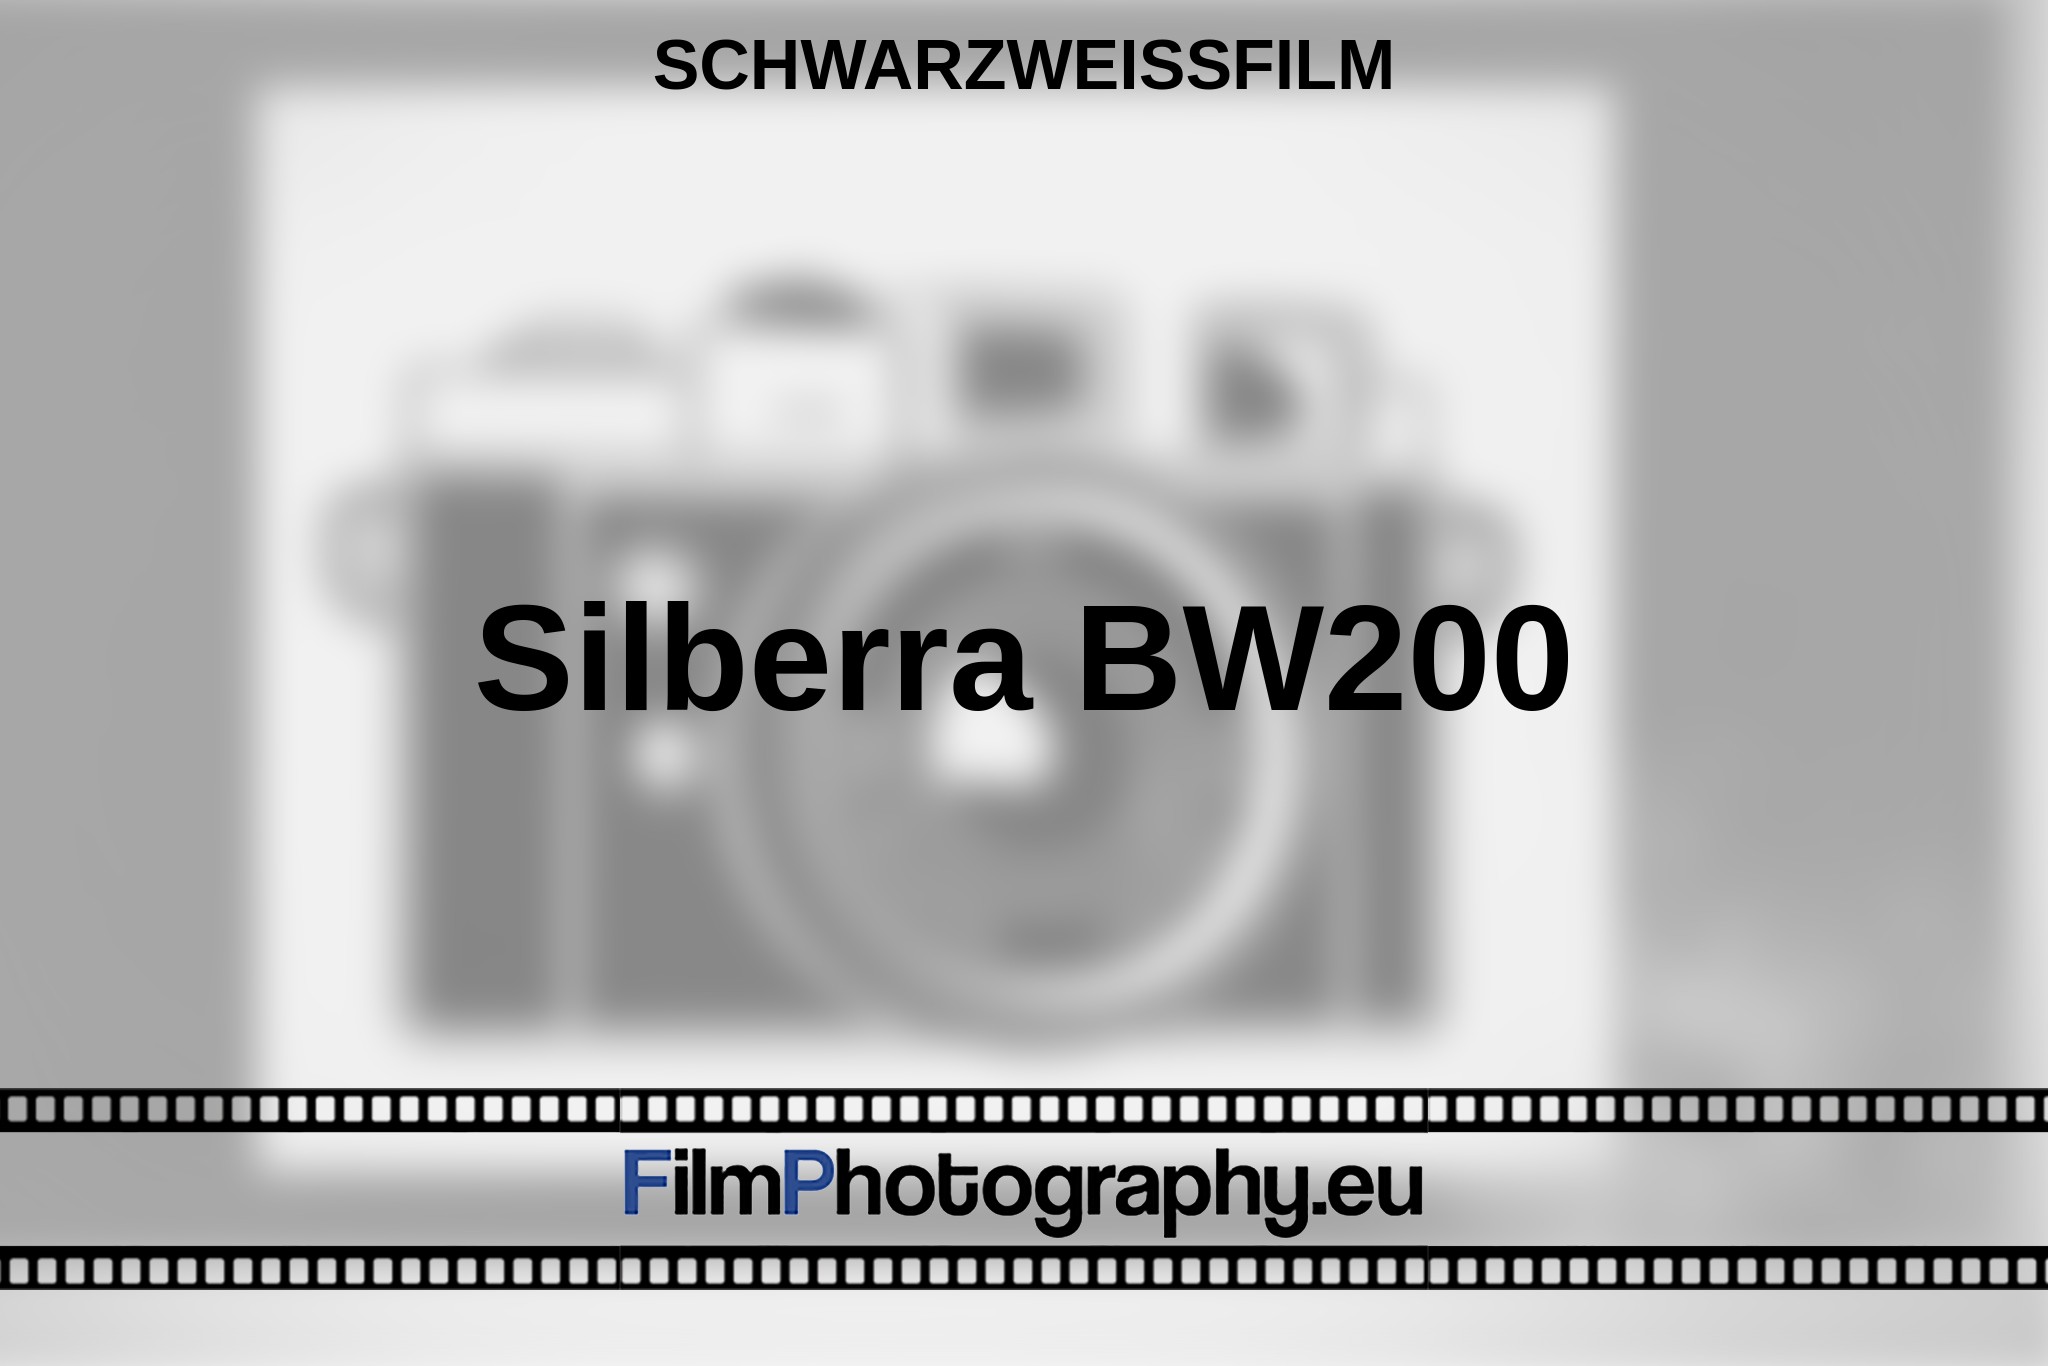 silberra-bw200-schwarzweißfilm-bnv.jpg